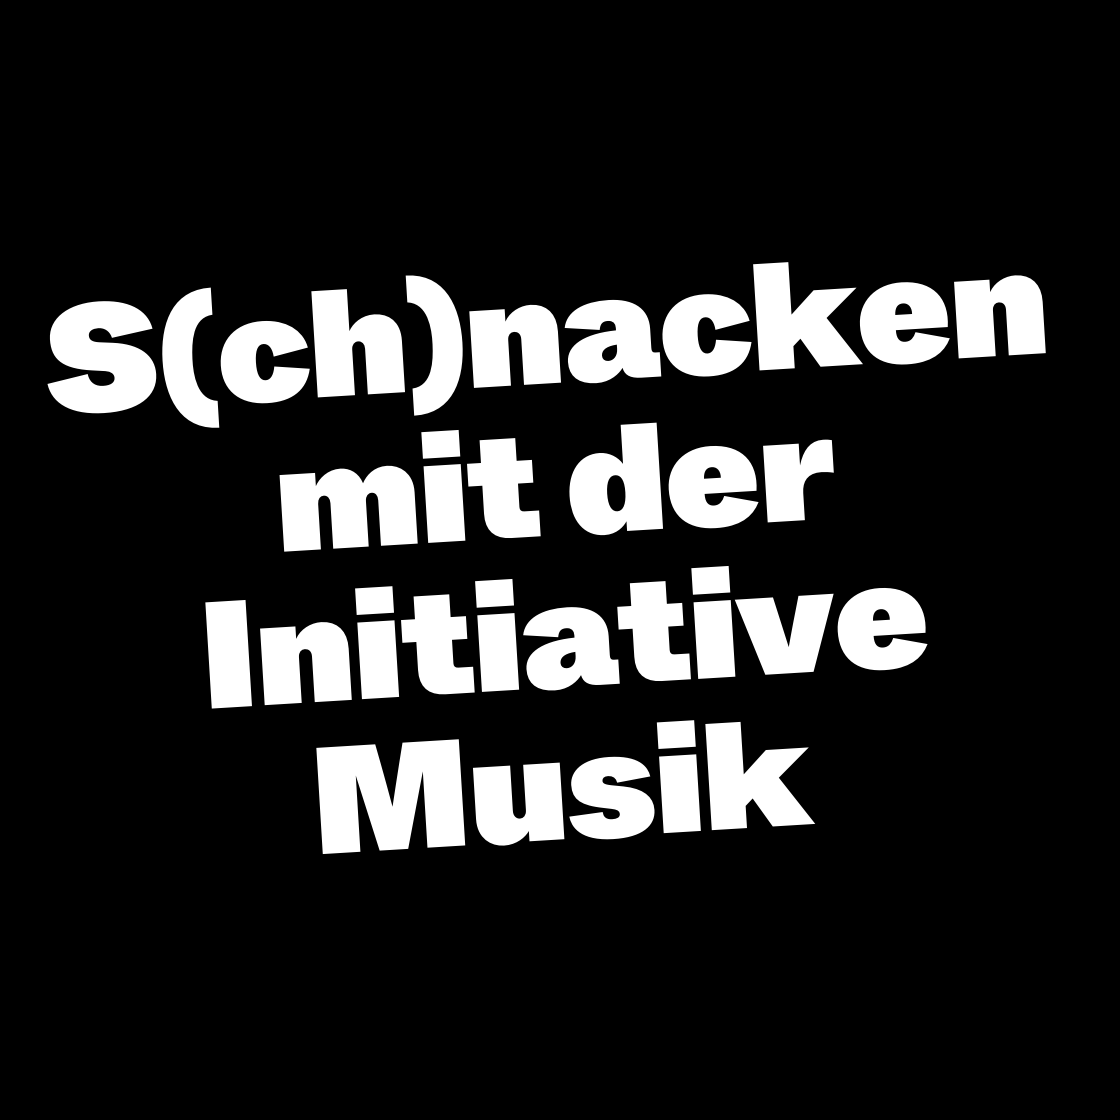 S(ch)nacken mit der Initiative Musik